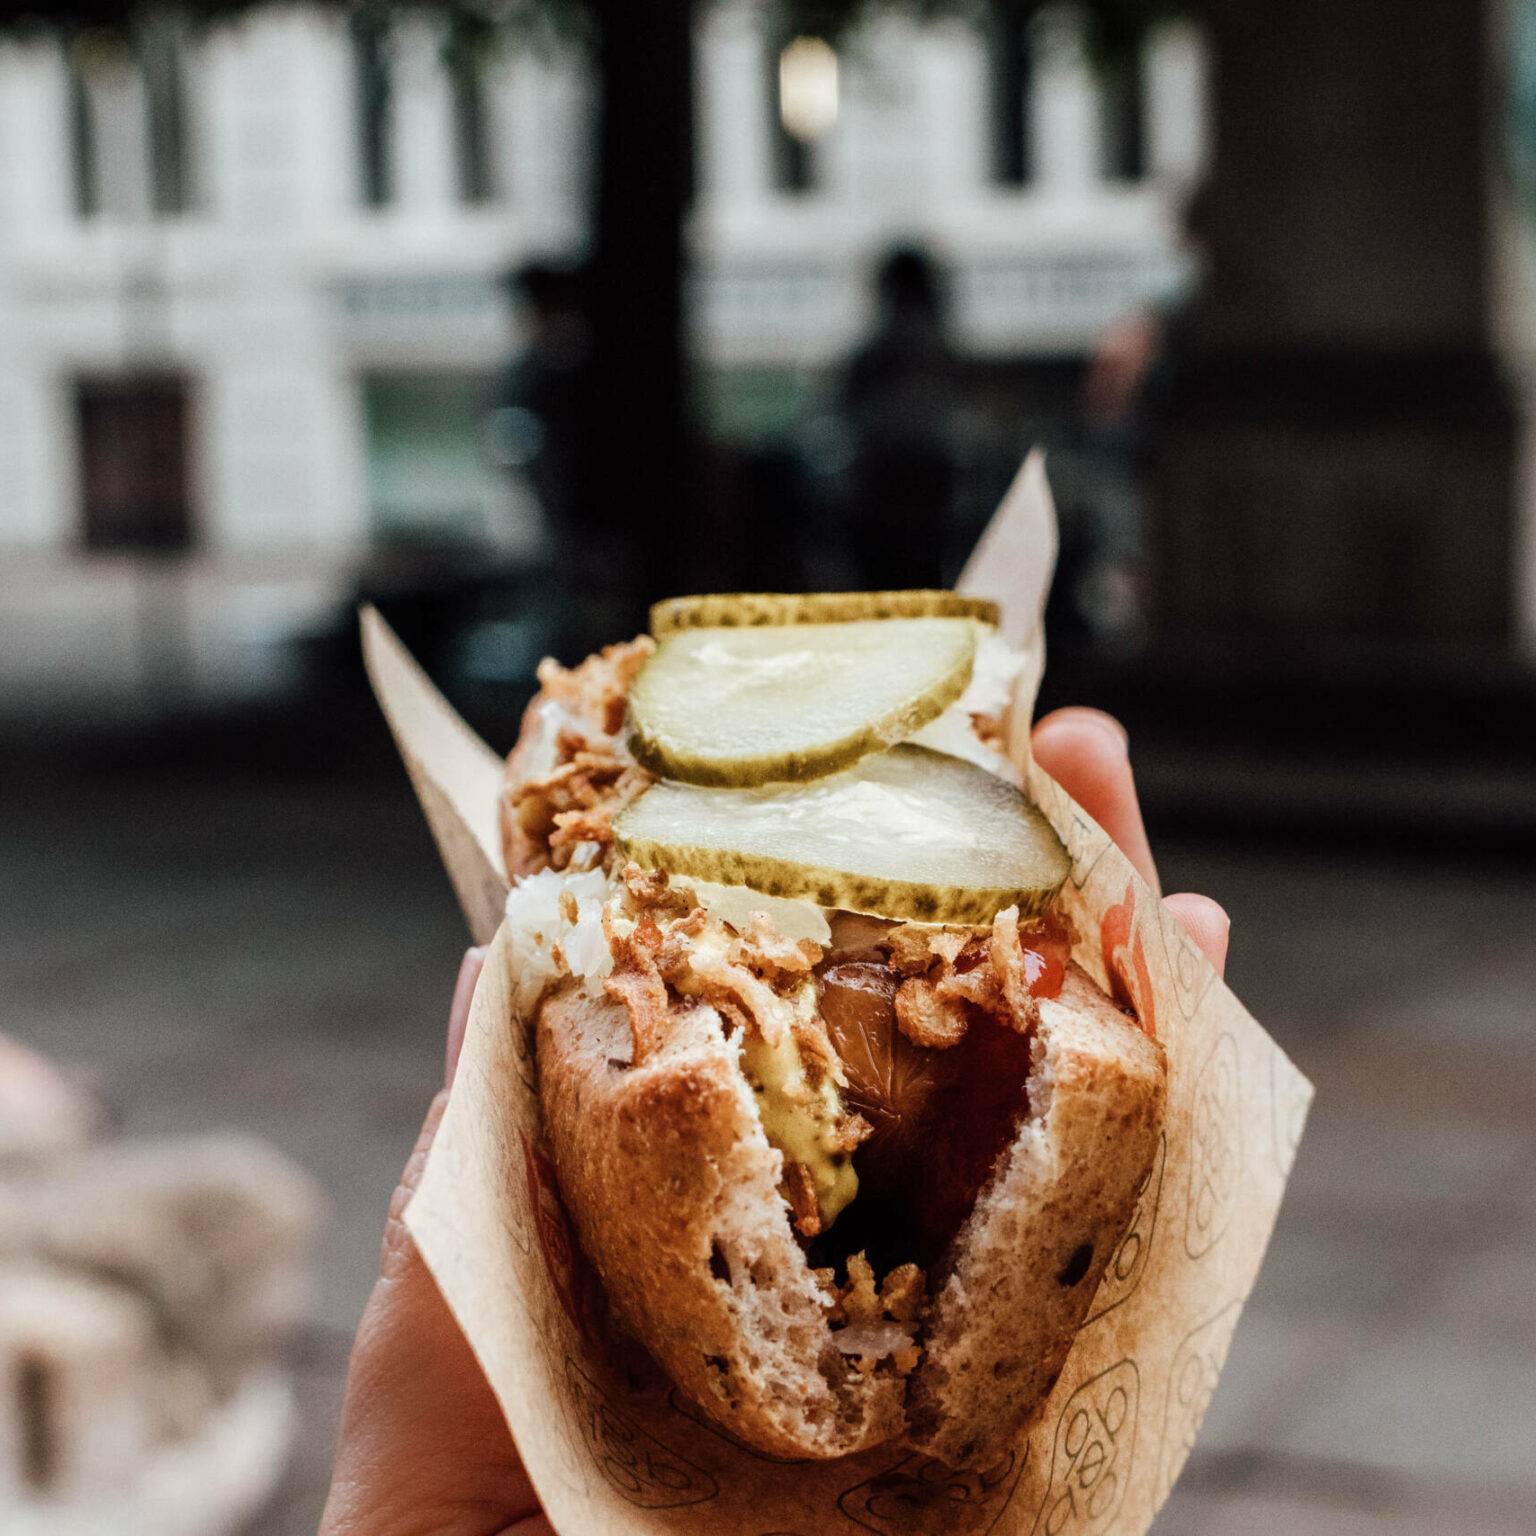 Bei einer Städtereise nach Kopenhagen darf ein leckerer Hot Dog mit Röstzwiebeln und Gurkenscheiben nicht fehlen.